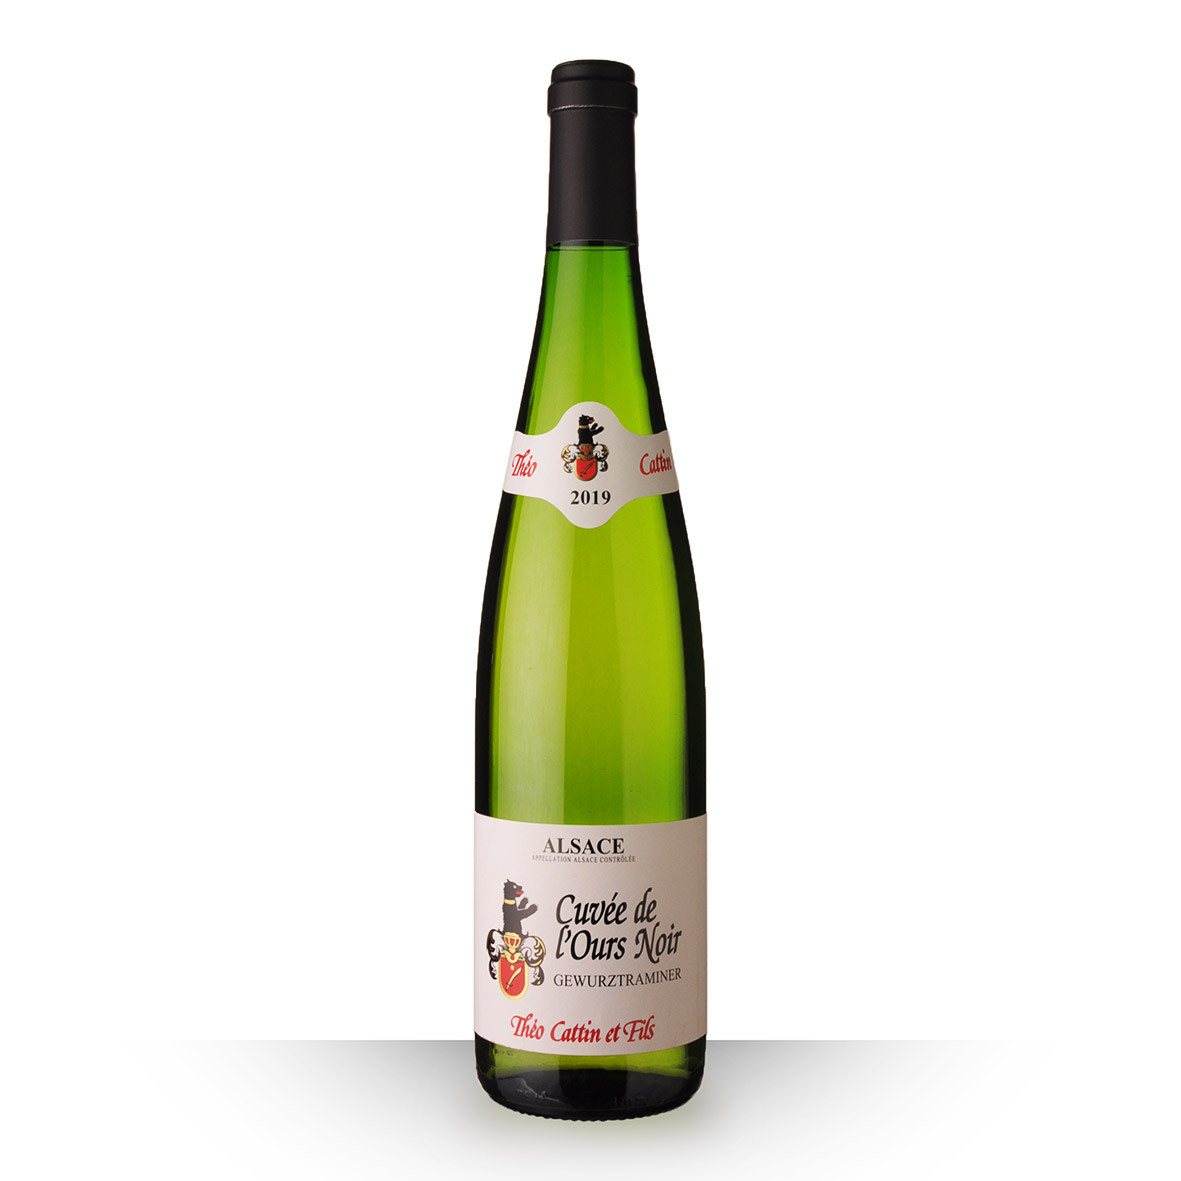 Théo Cattin Cuvée de lOurs Noir Alsace Gewurztraminer Blanc 2019 75cl www.odyssee-vins.com